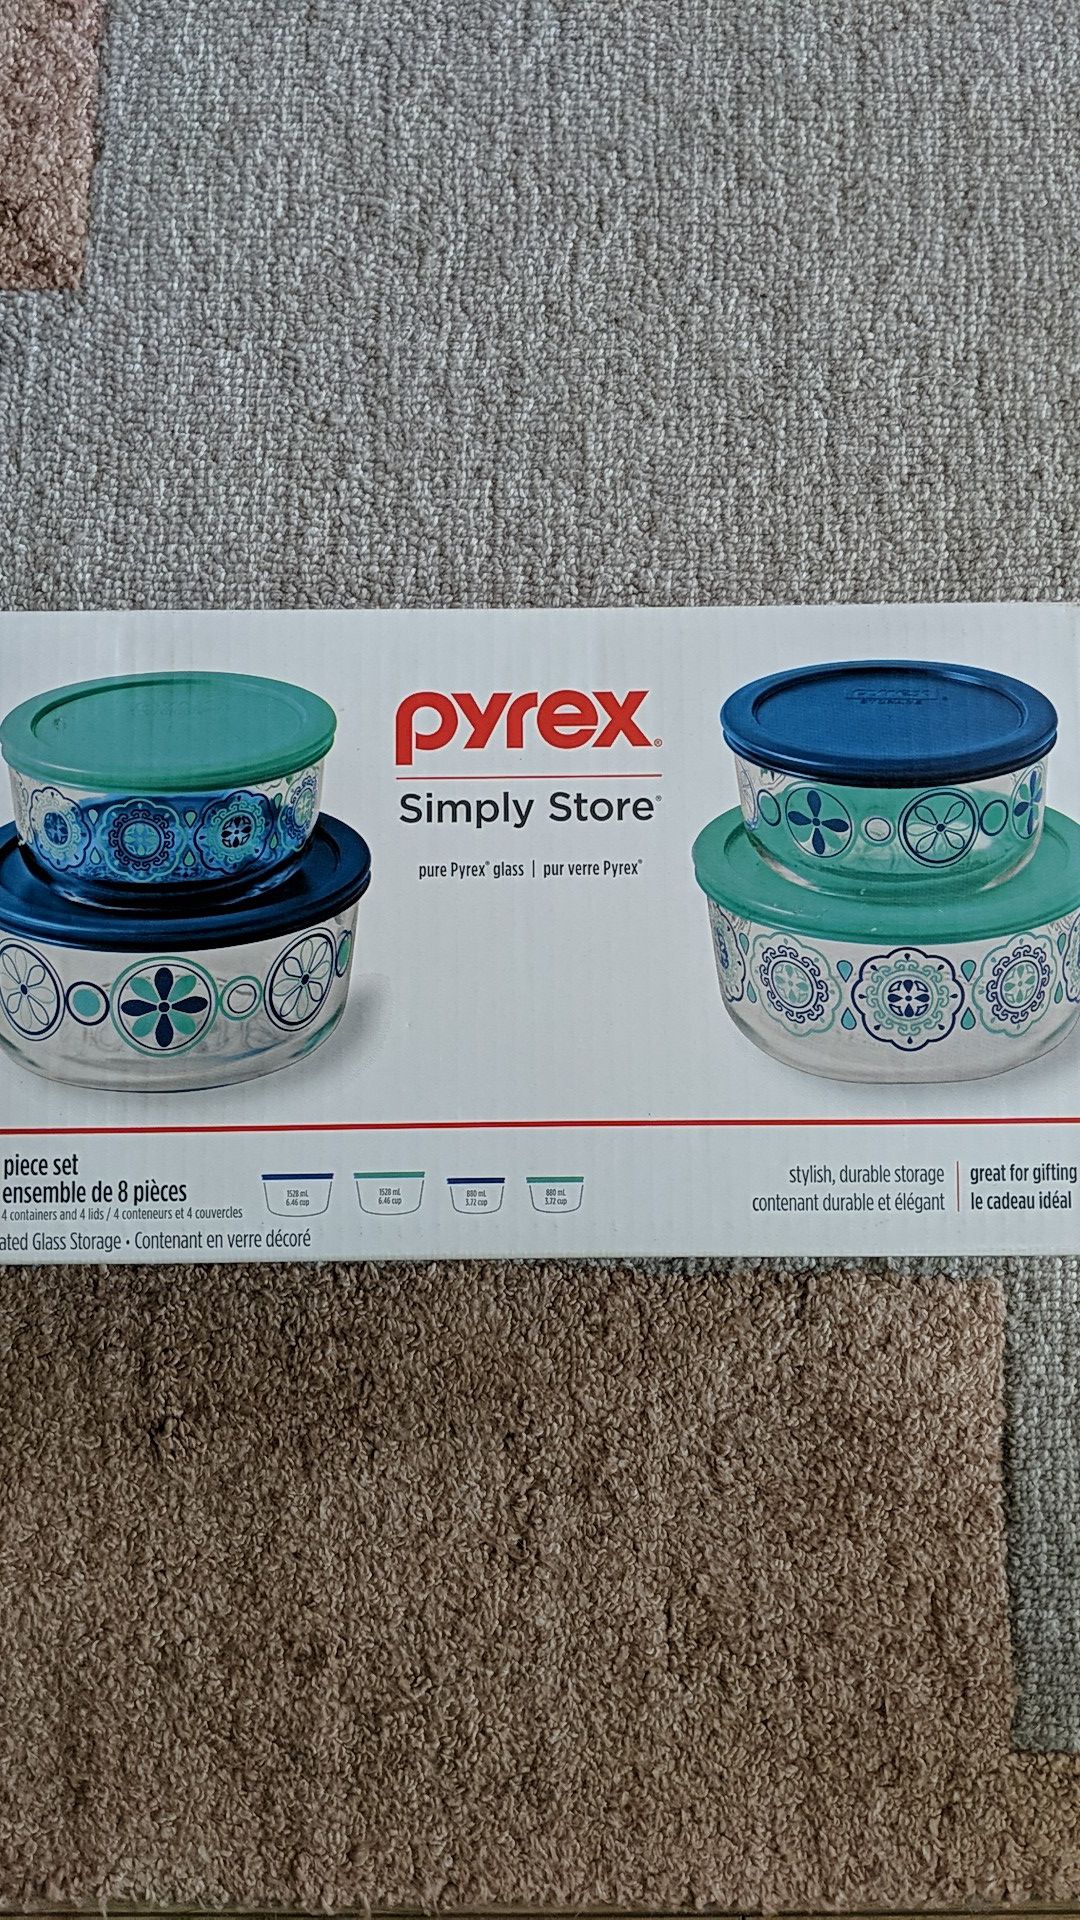 Pyrex 8 piece glass storage set - New/Unopened